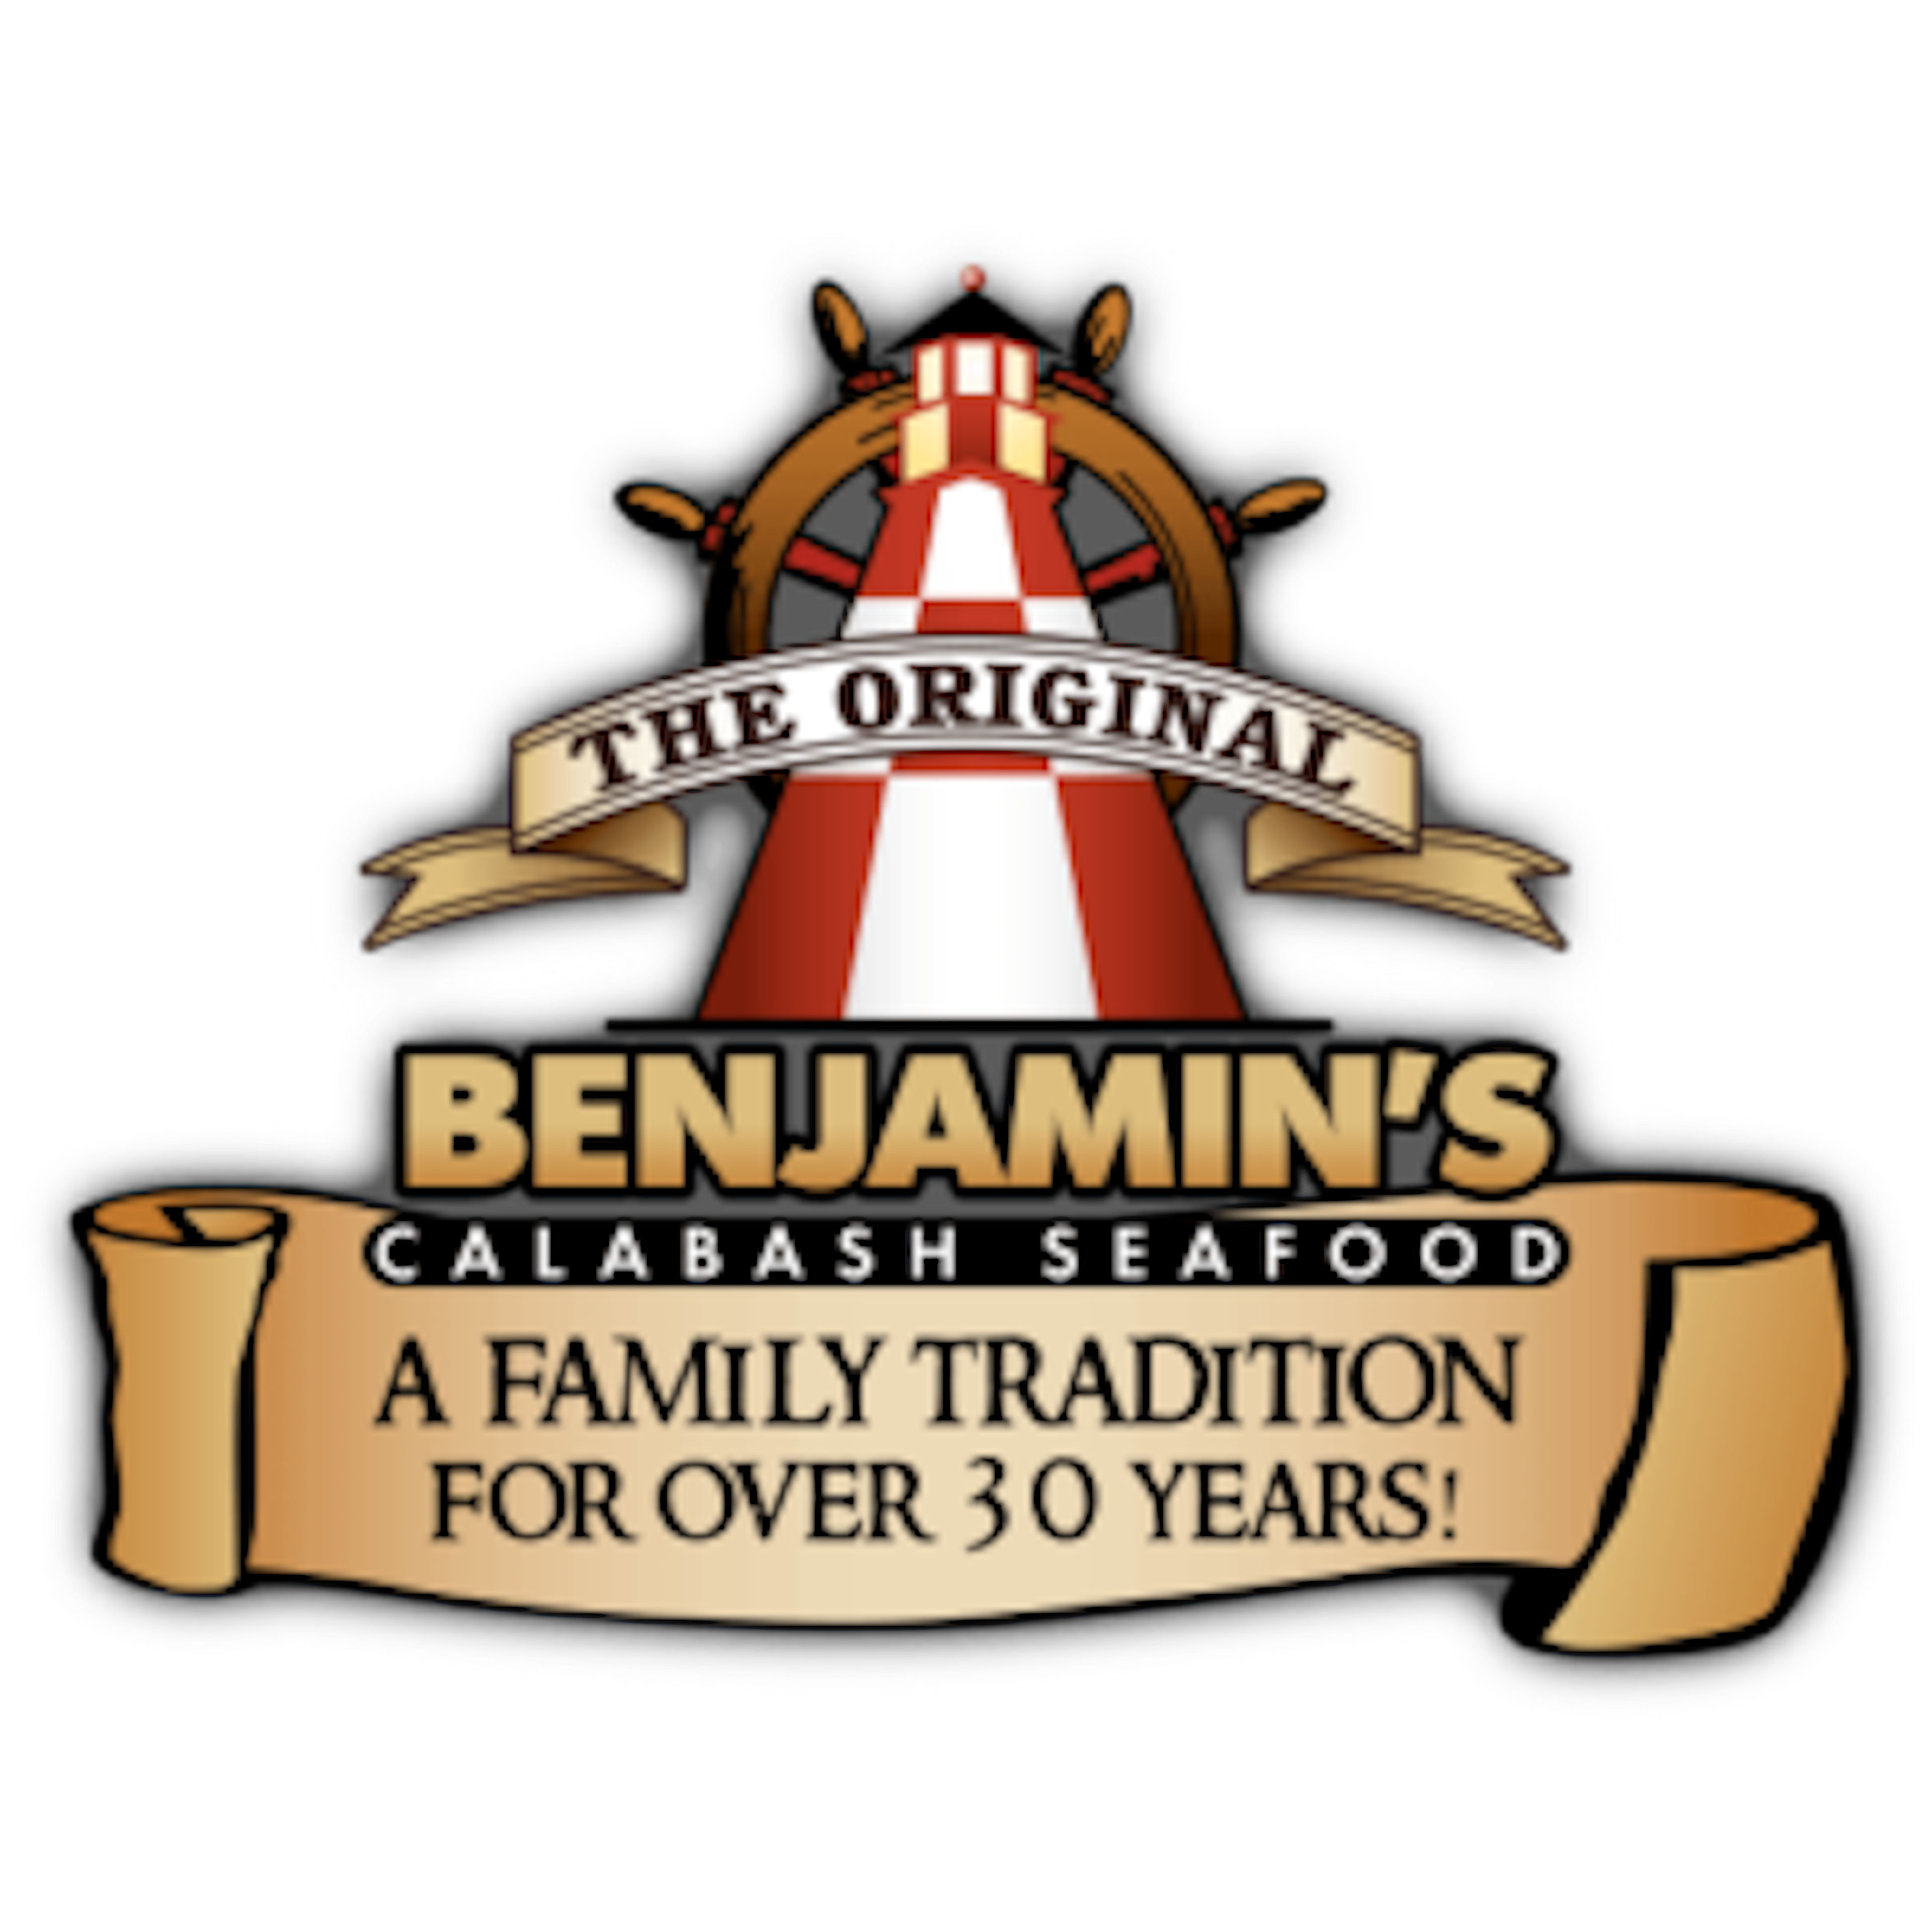 The Original Benjamin’s